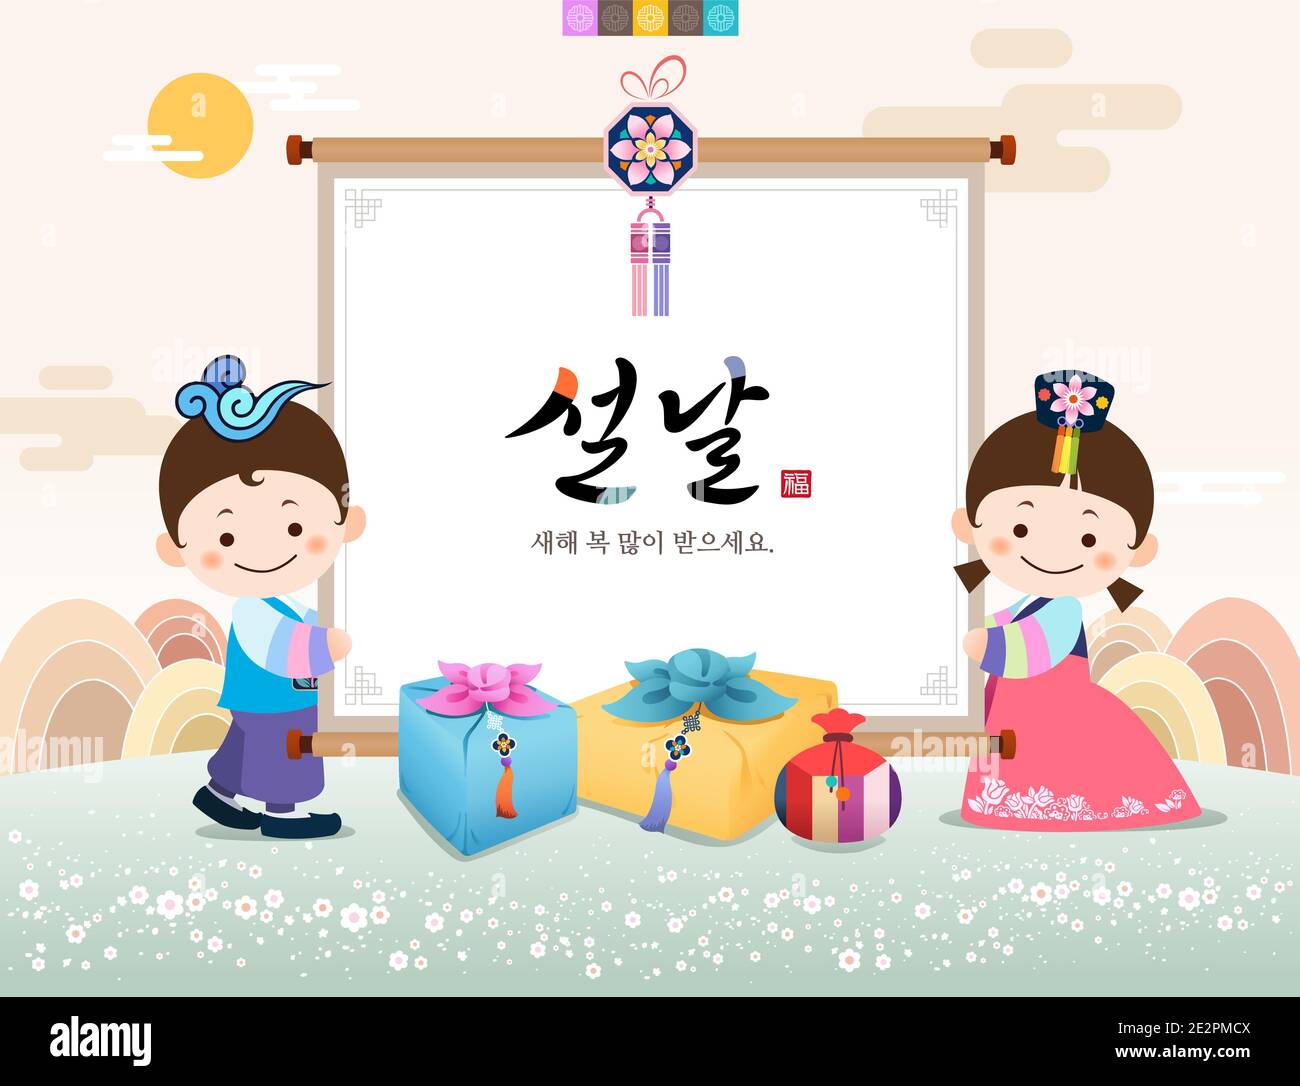 Bonne année, traduction de texte coréen: Bonne année, calligraphie, les enfants hanbok traditionnels tiennent un rouleau pour célébrer la nouvelle année. Illustration de Vecteur